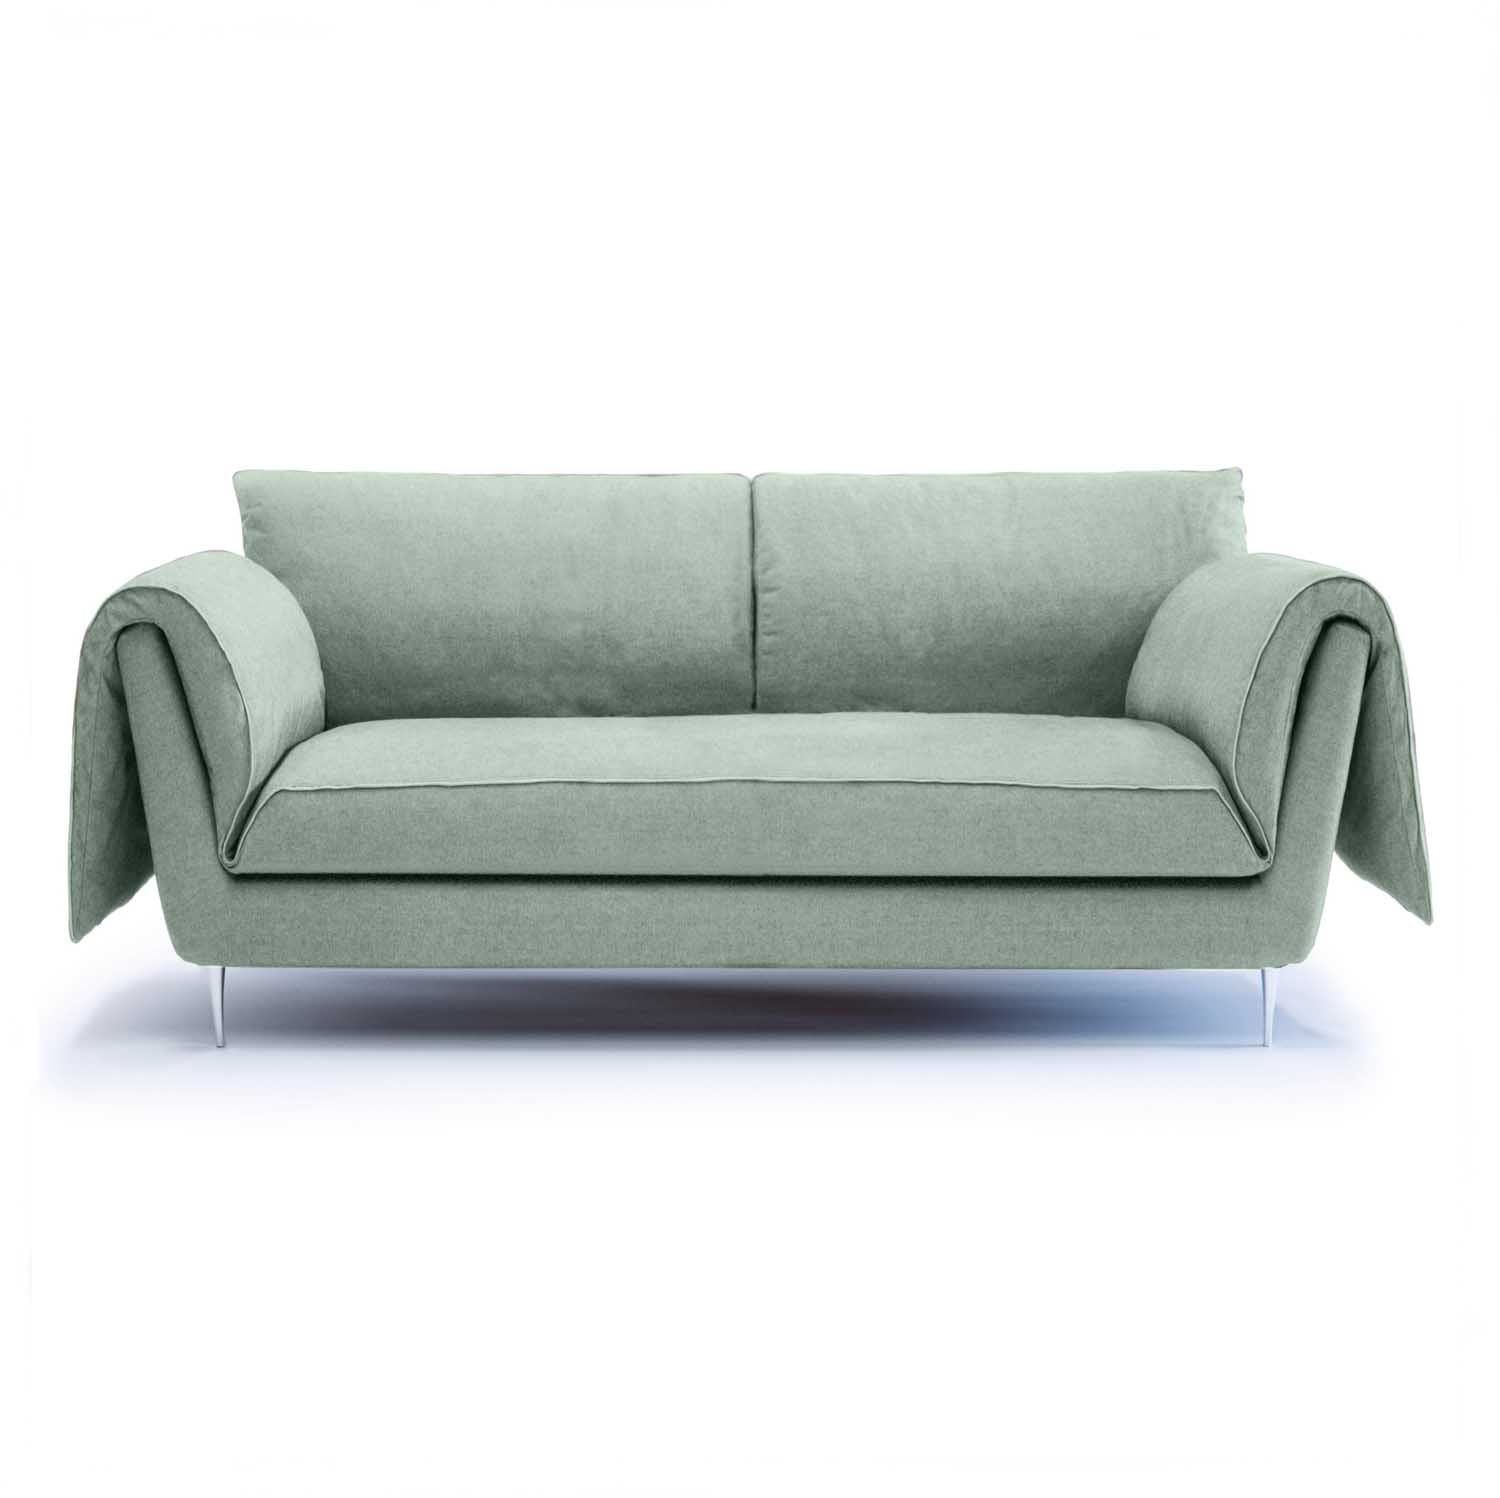 Tailored Design - Casquet Sofa